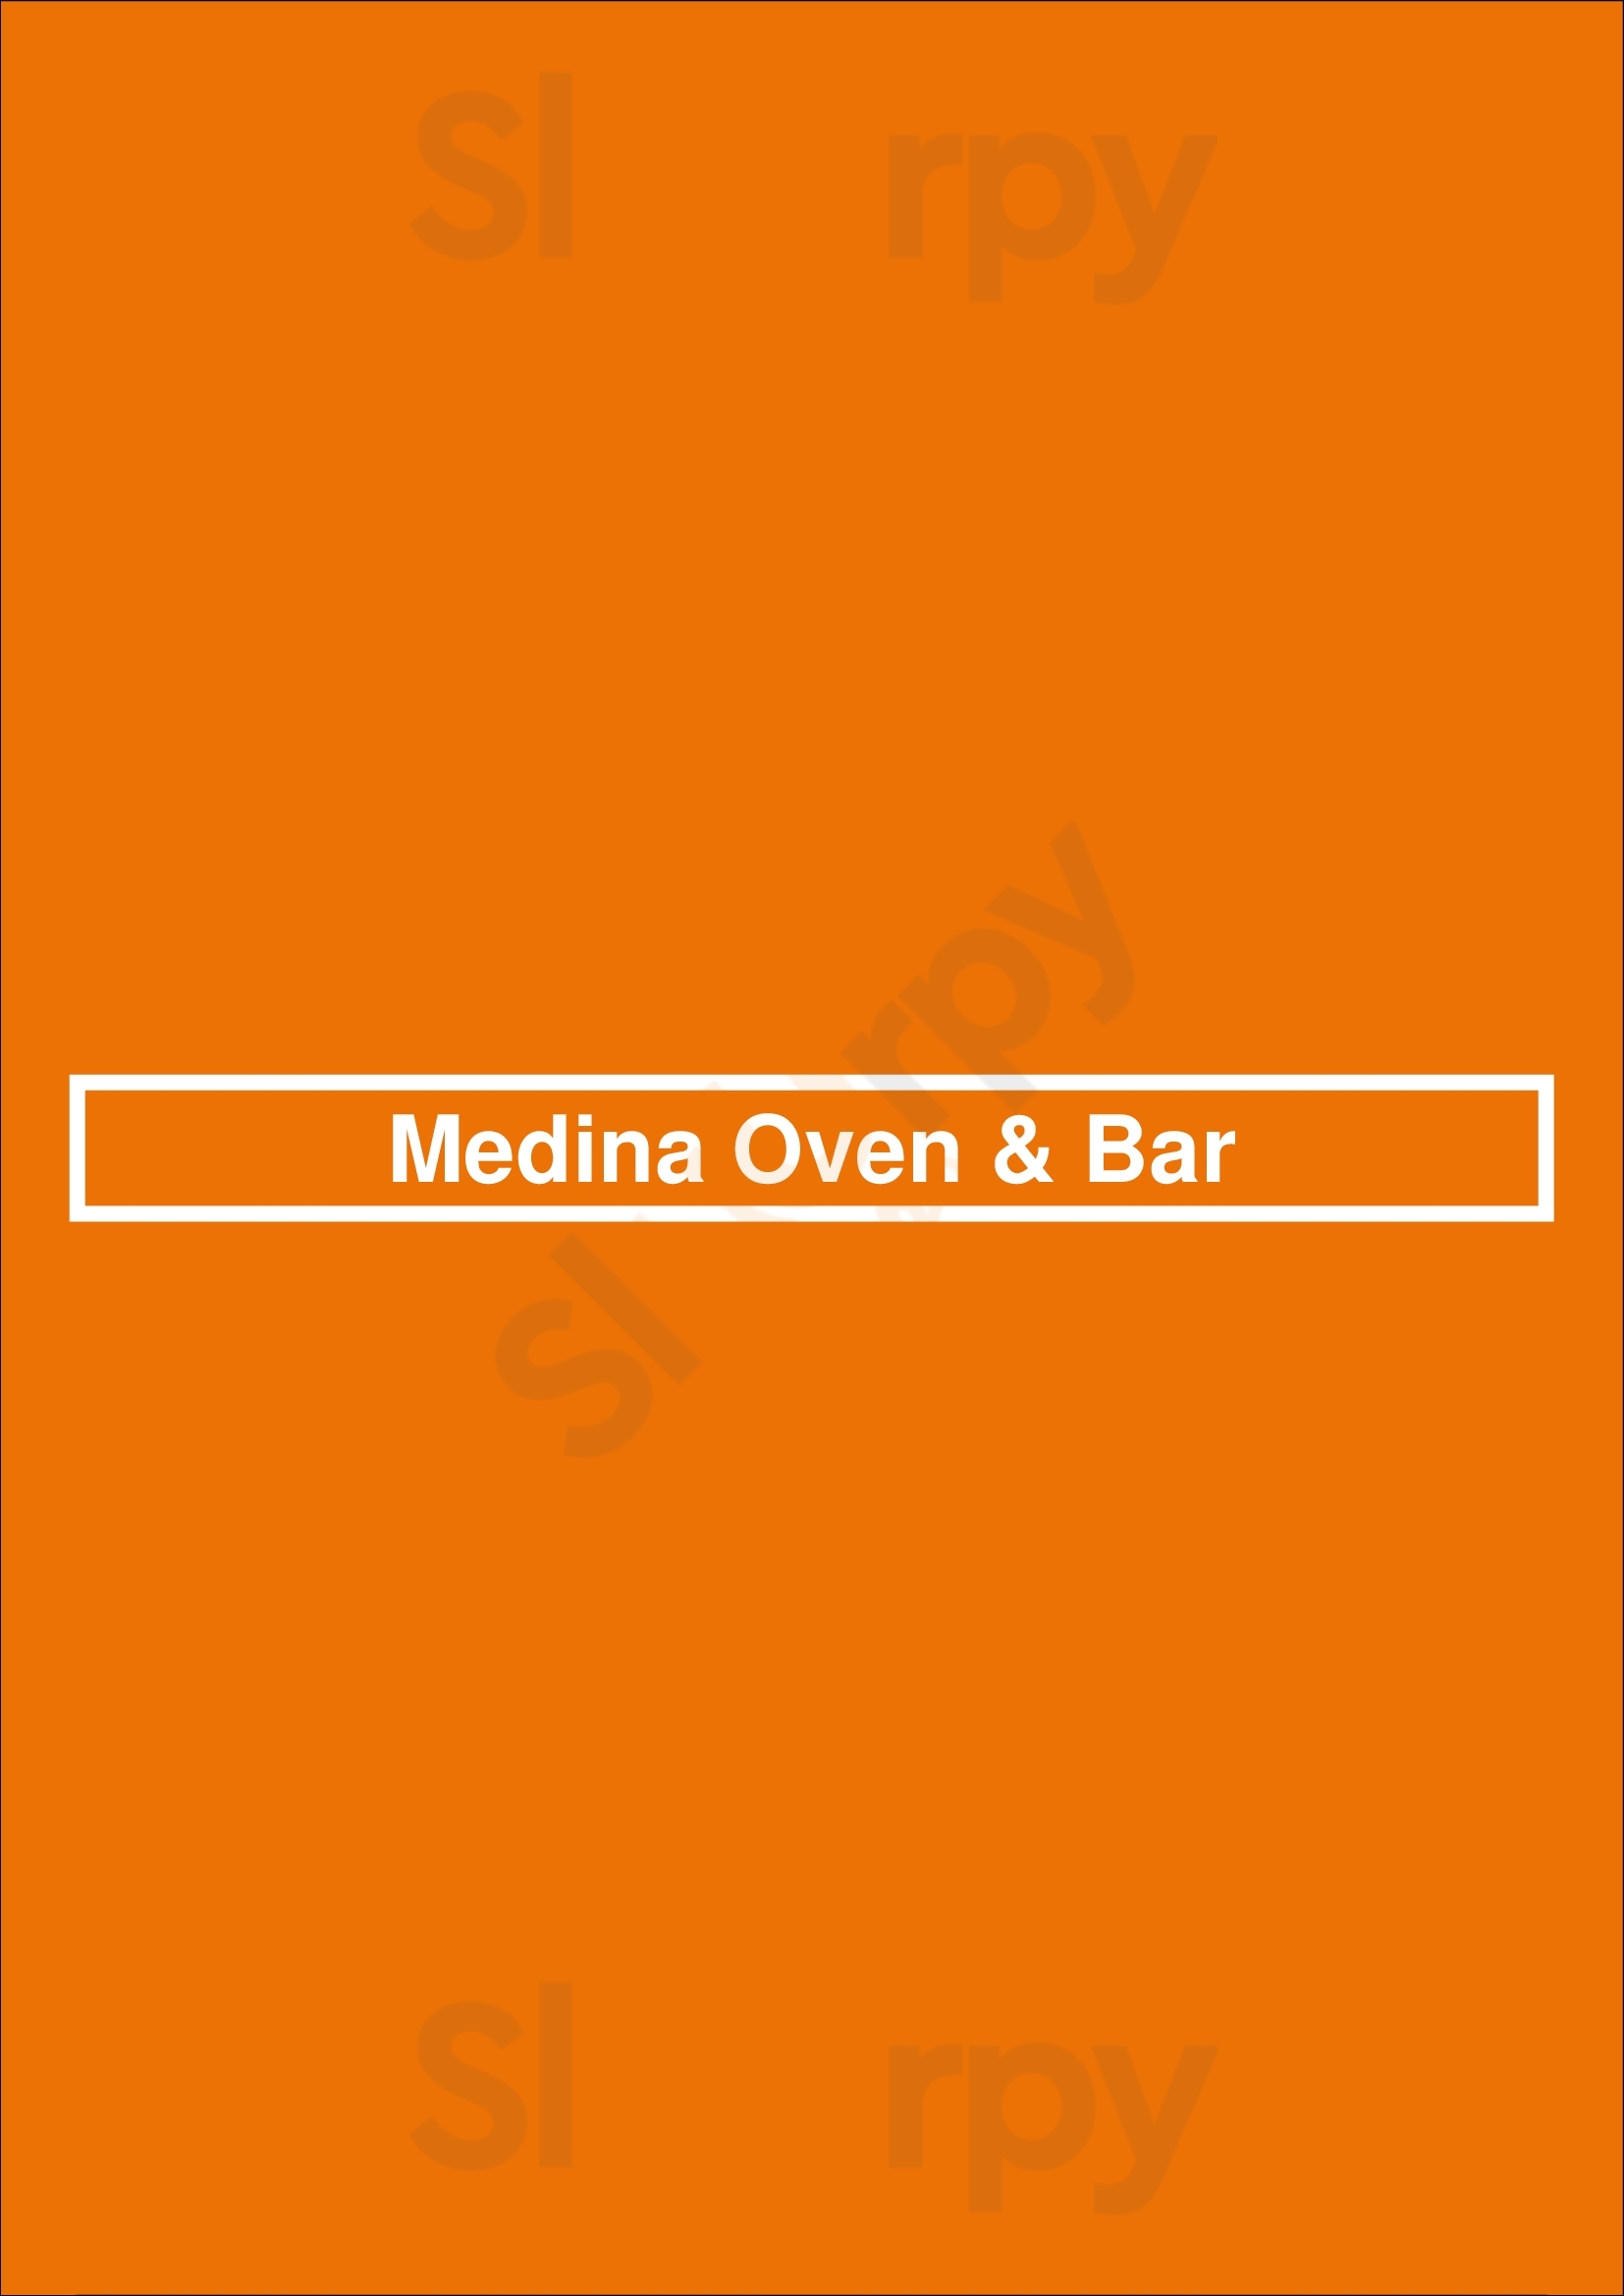 Medina Oven & Bar Dallas Menu - 1